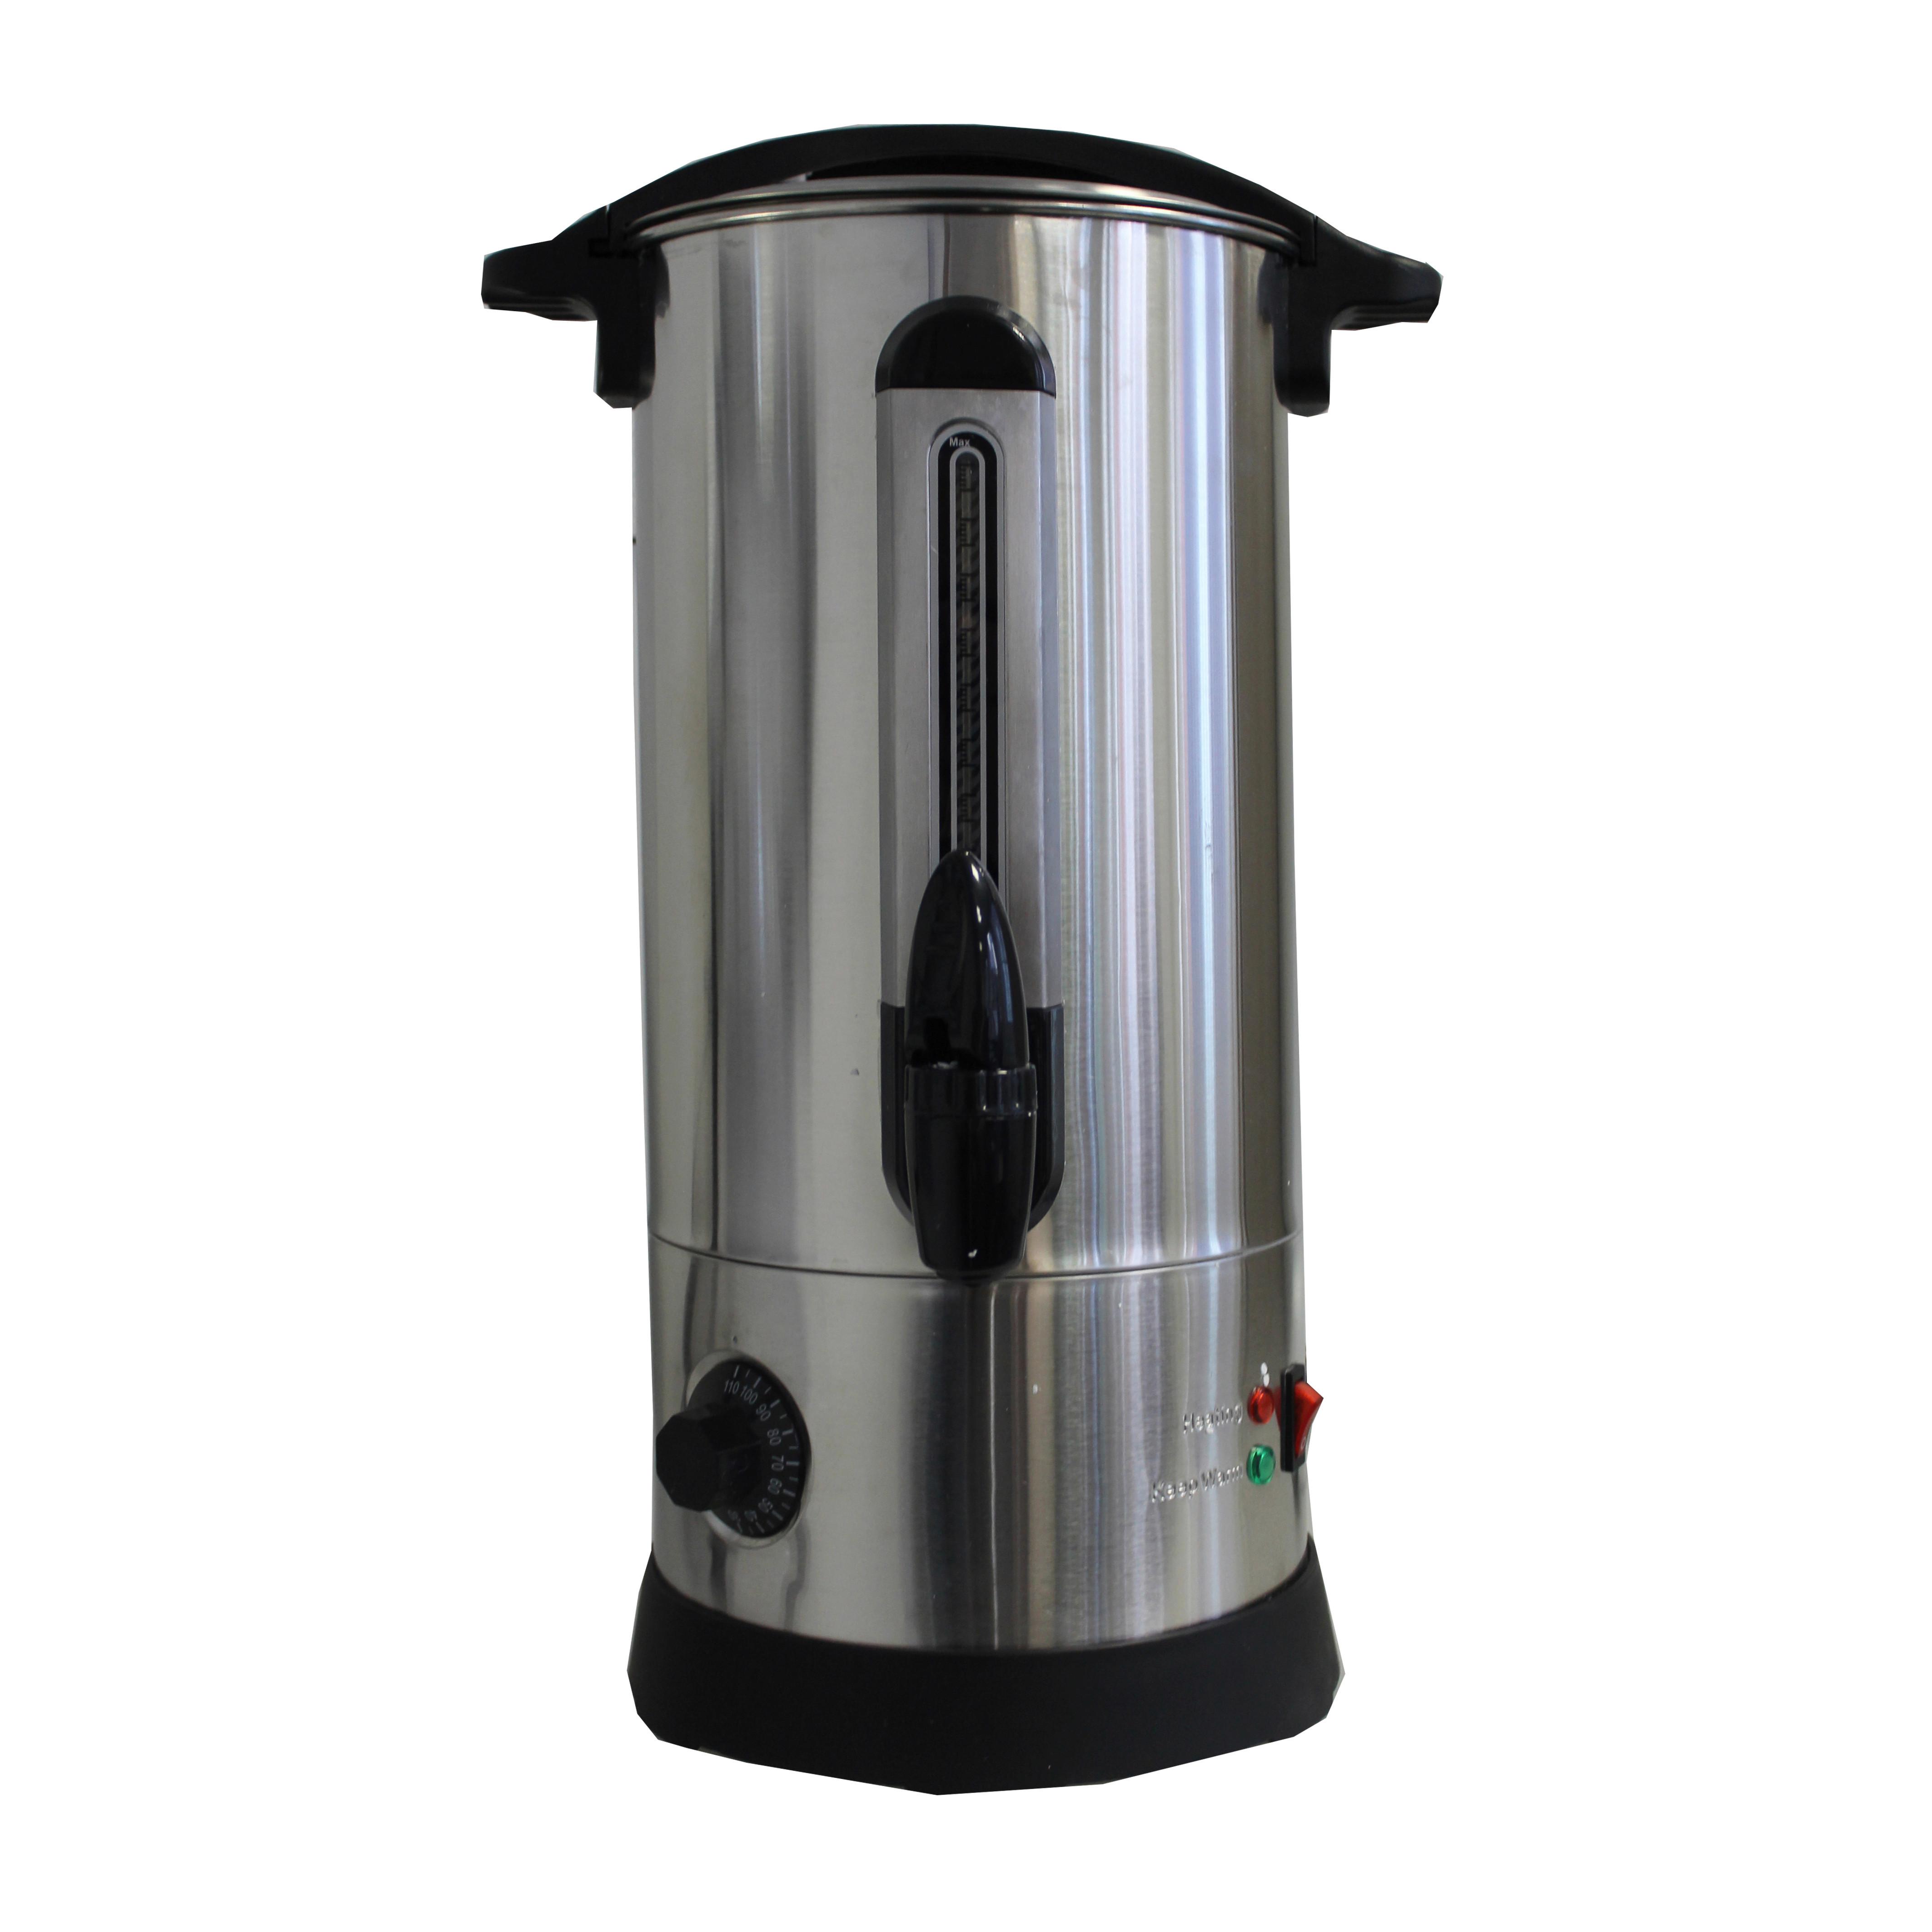 Glühweinbehälter Deski II 8 Liter Bis 100 Grad - Silberfarben, Basics, Kunststoff/Metall